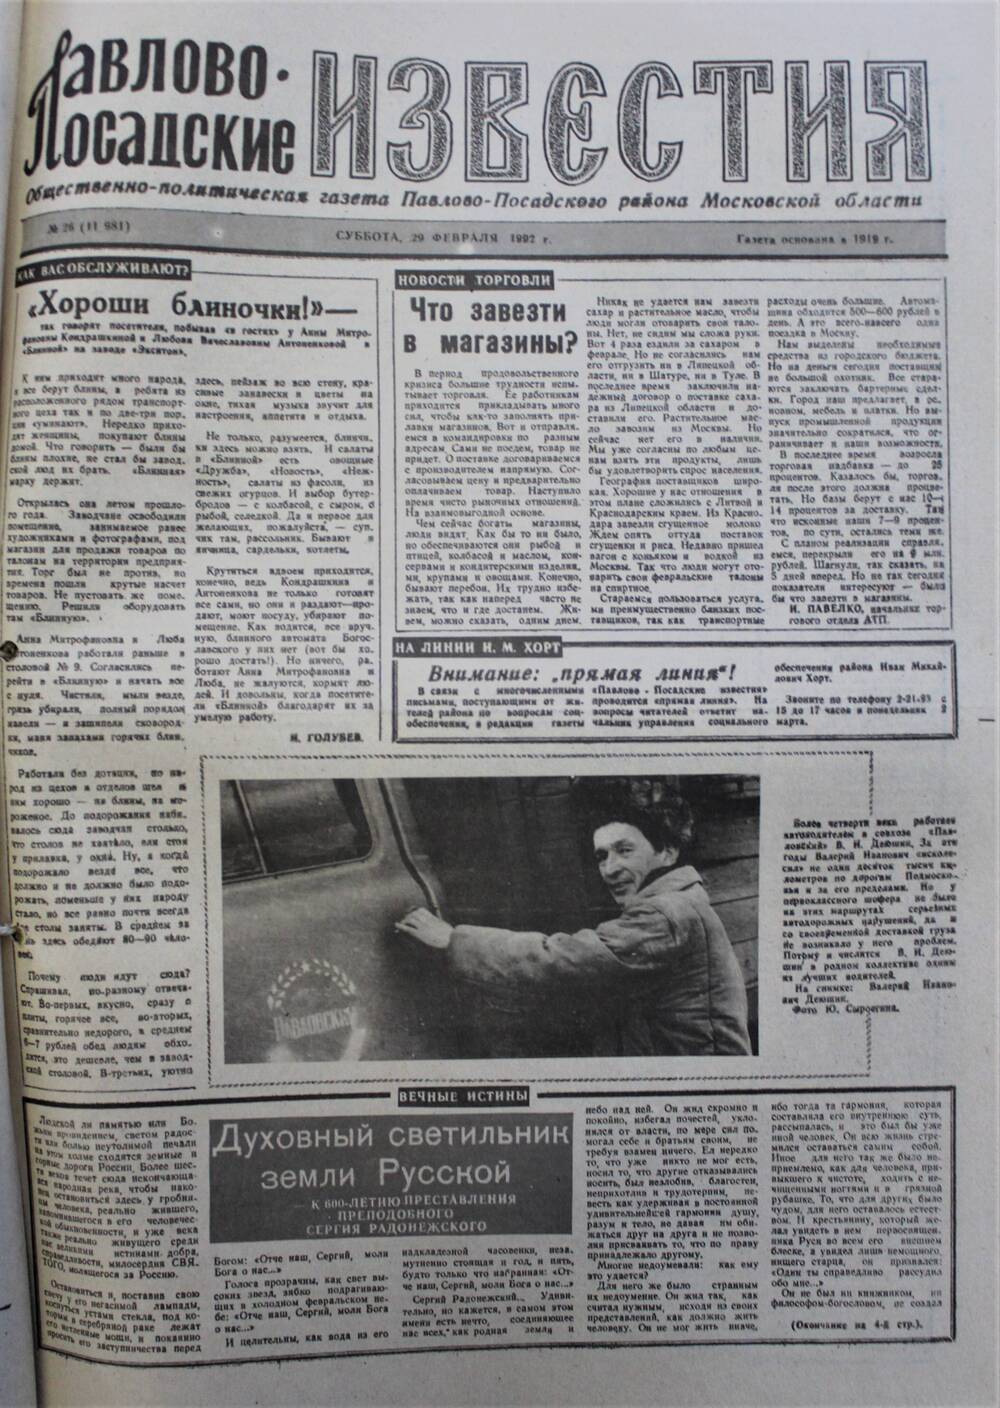 Газета Павлово-Посадские известия № 26 (11981)  от 29 февраля 1992 г.